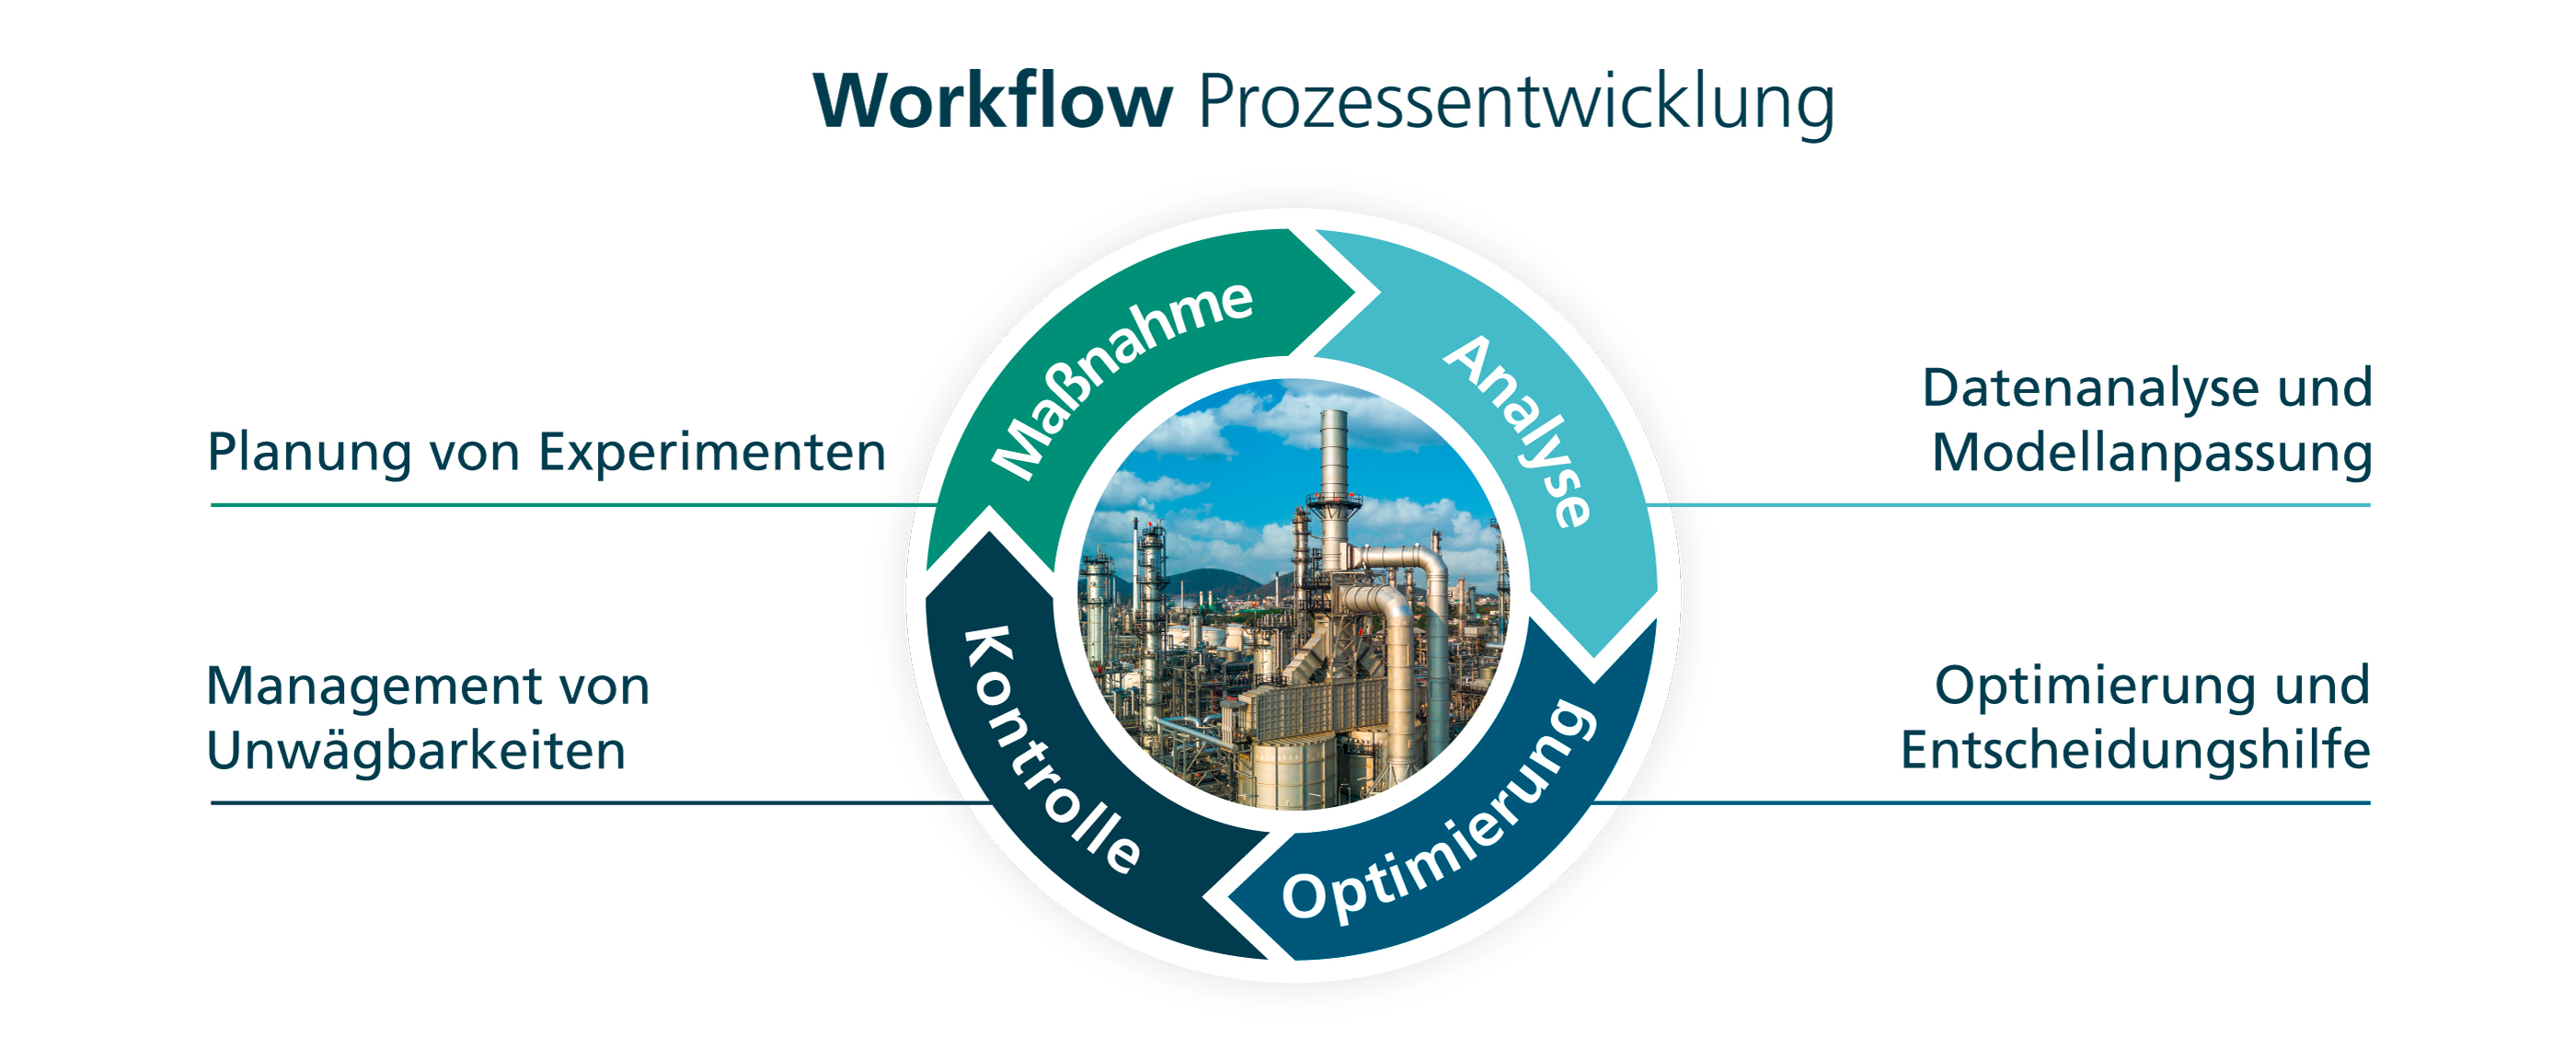 Workflow Prozessentwicklung Verfahrenstechnik